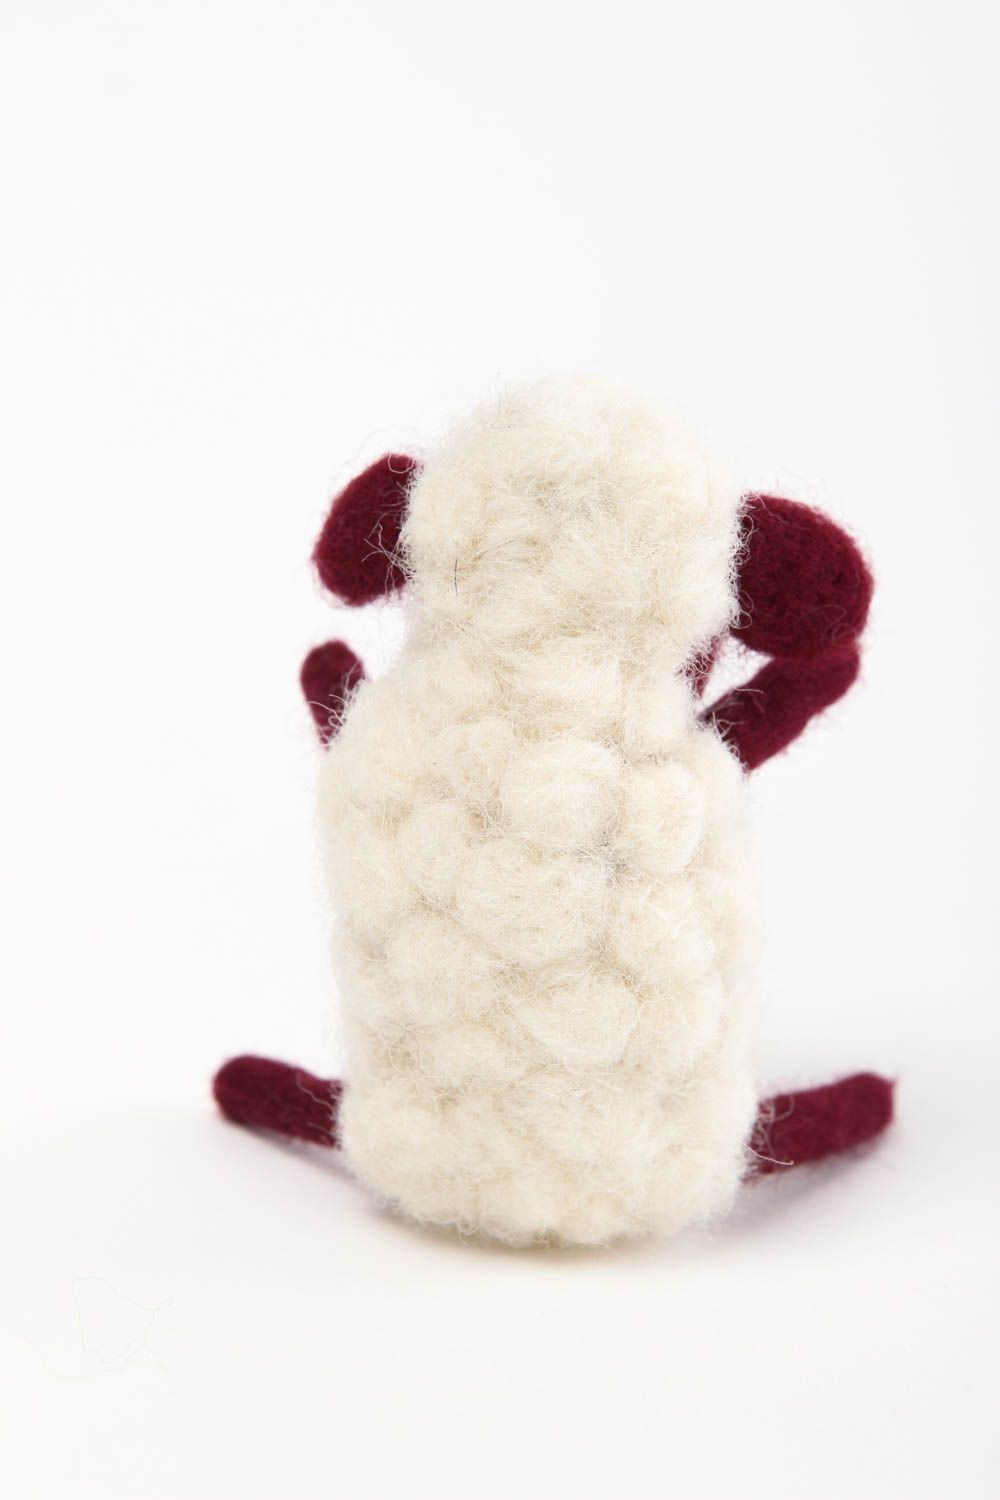  Игрушка ручной работы интерьерная игрушка милая овечка мягкая игрушка из шерсти фото 4